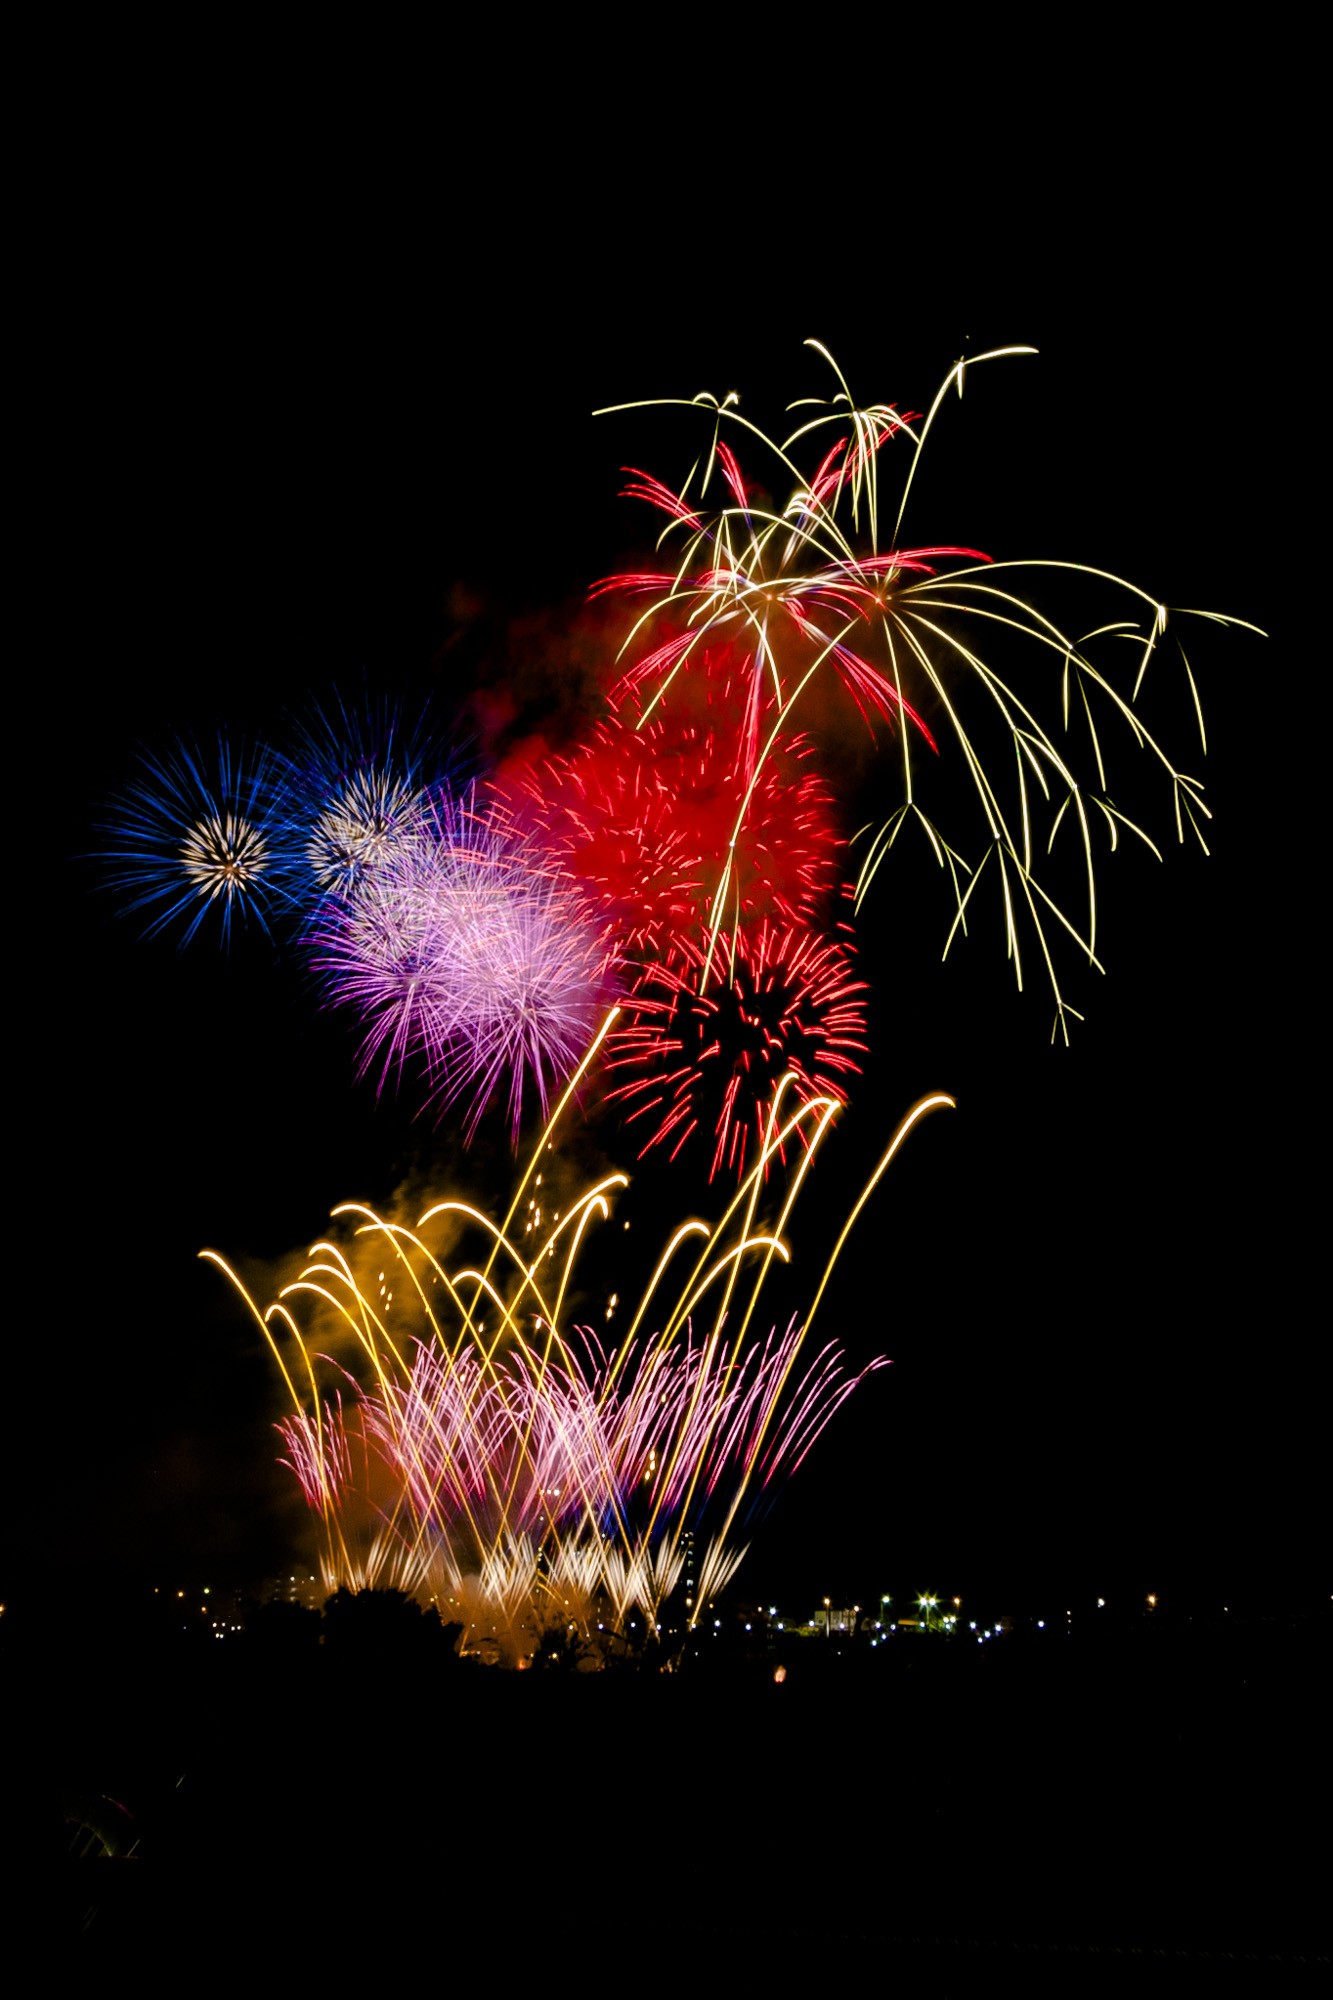 夜空を彩る花火 川崎市制記念多摩川花火大会 フリー写真素材 イメージガレージ